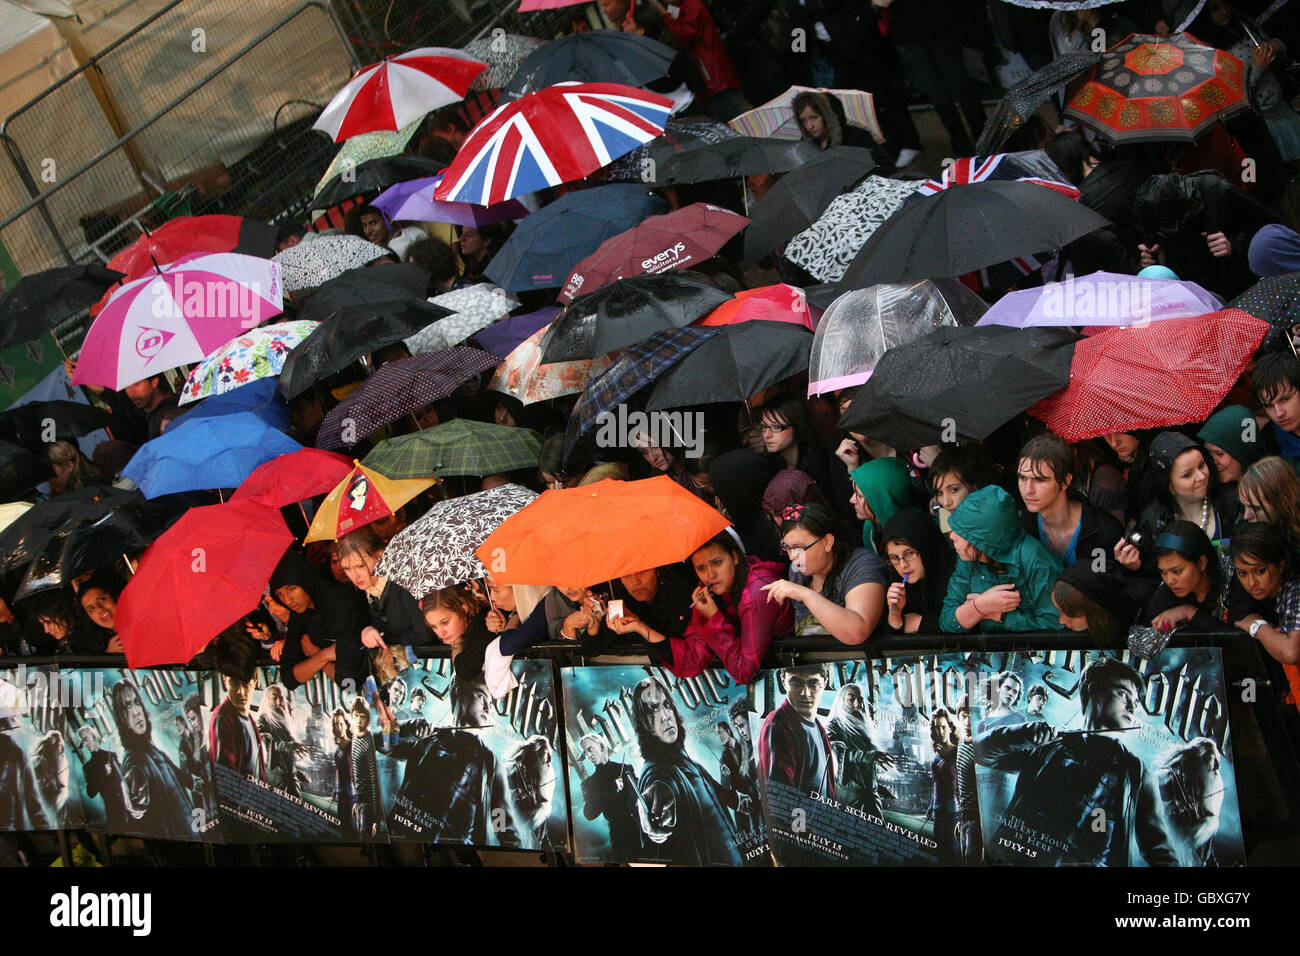 La folla durante la pioggia pesante alla prima mondiale di Harry Potter e il Principe Mezzosangue all'Odeon Leicester Square, Londra. Foto Stock